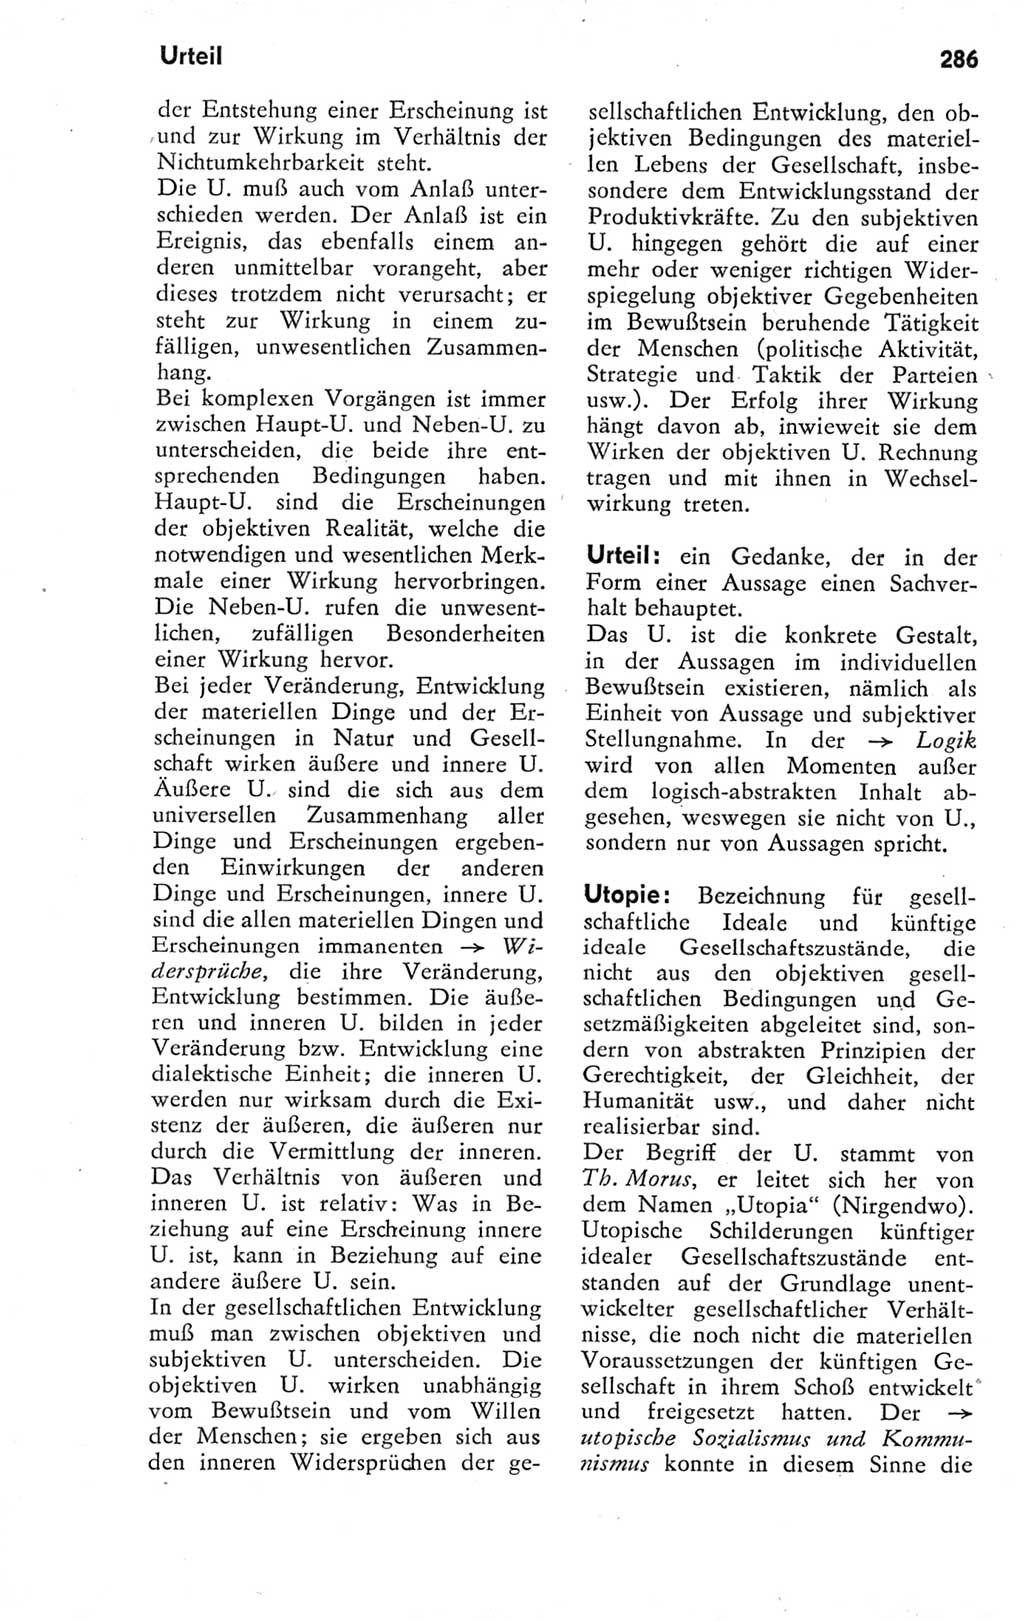 Kleines Wörterbuch der marxistisch-leninistischen Philosophie [Deutsche Demokratische Republik (DDR)] 1974, Seite 286 (Kl. Wb. ML Phil. DDR 1974, S. 286)